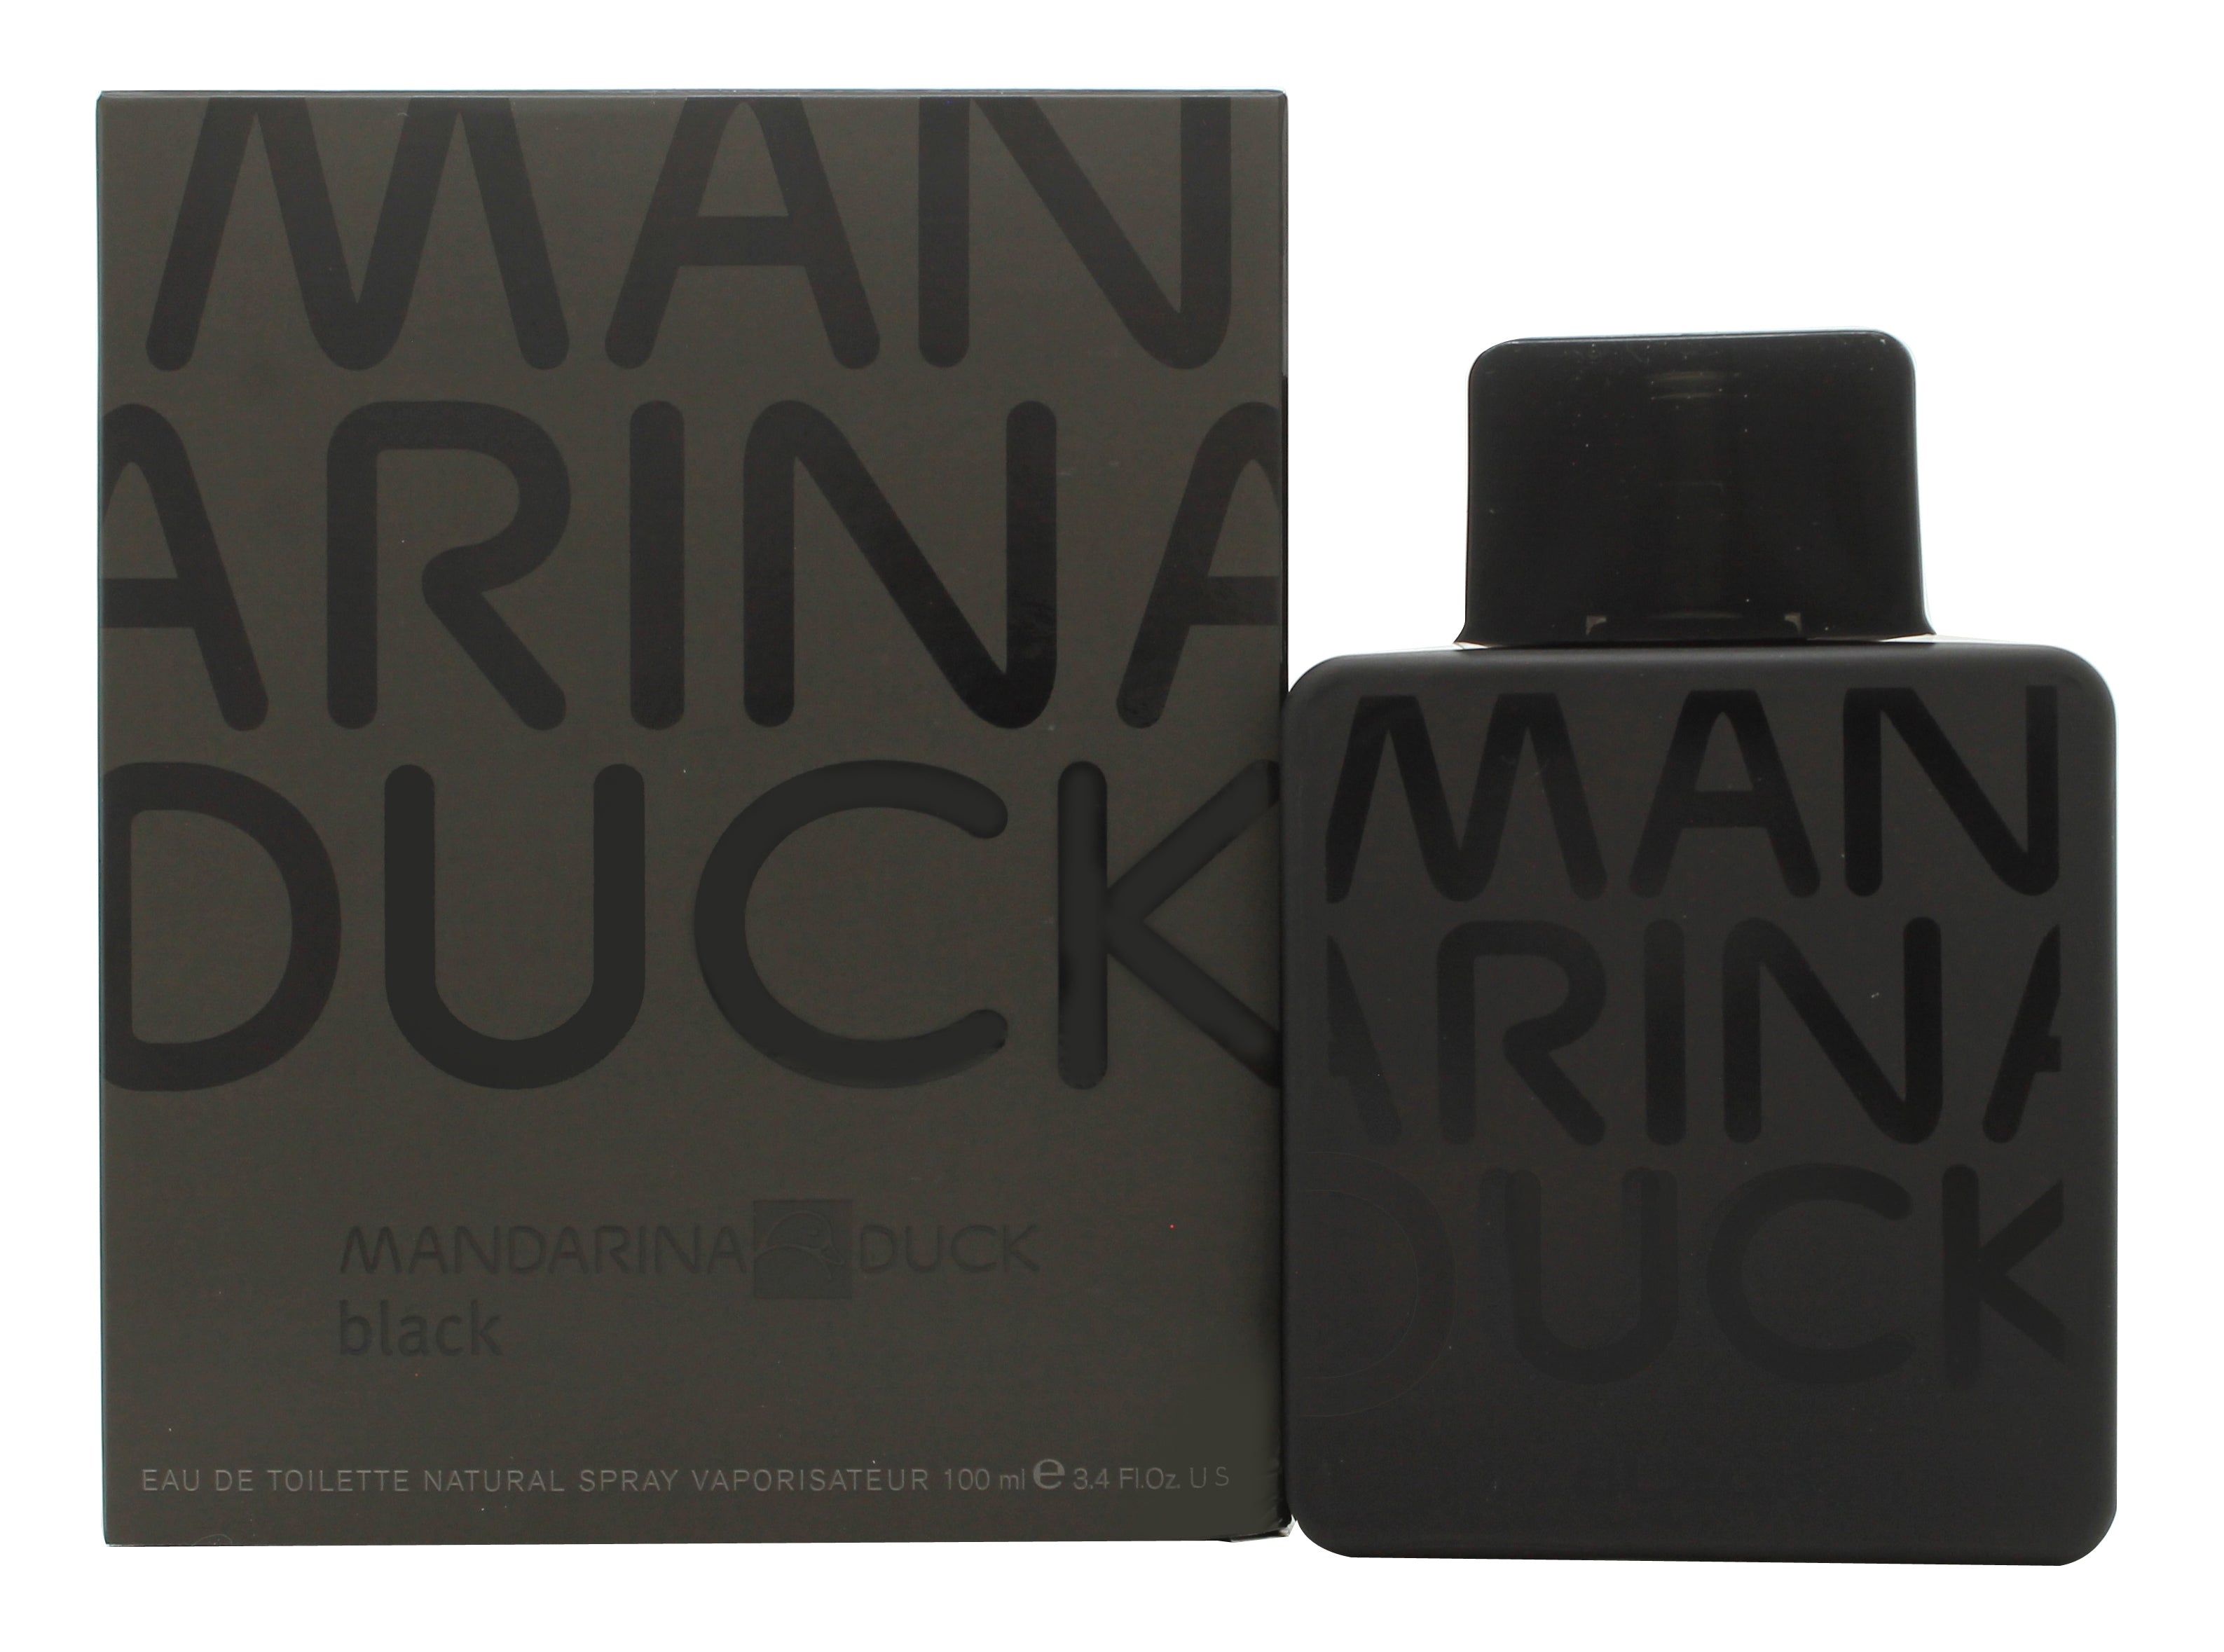 View Mandarina Duck Pure Black for Men Eau De Toilette 100ml Spray information